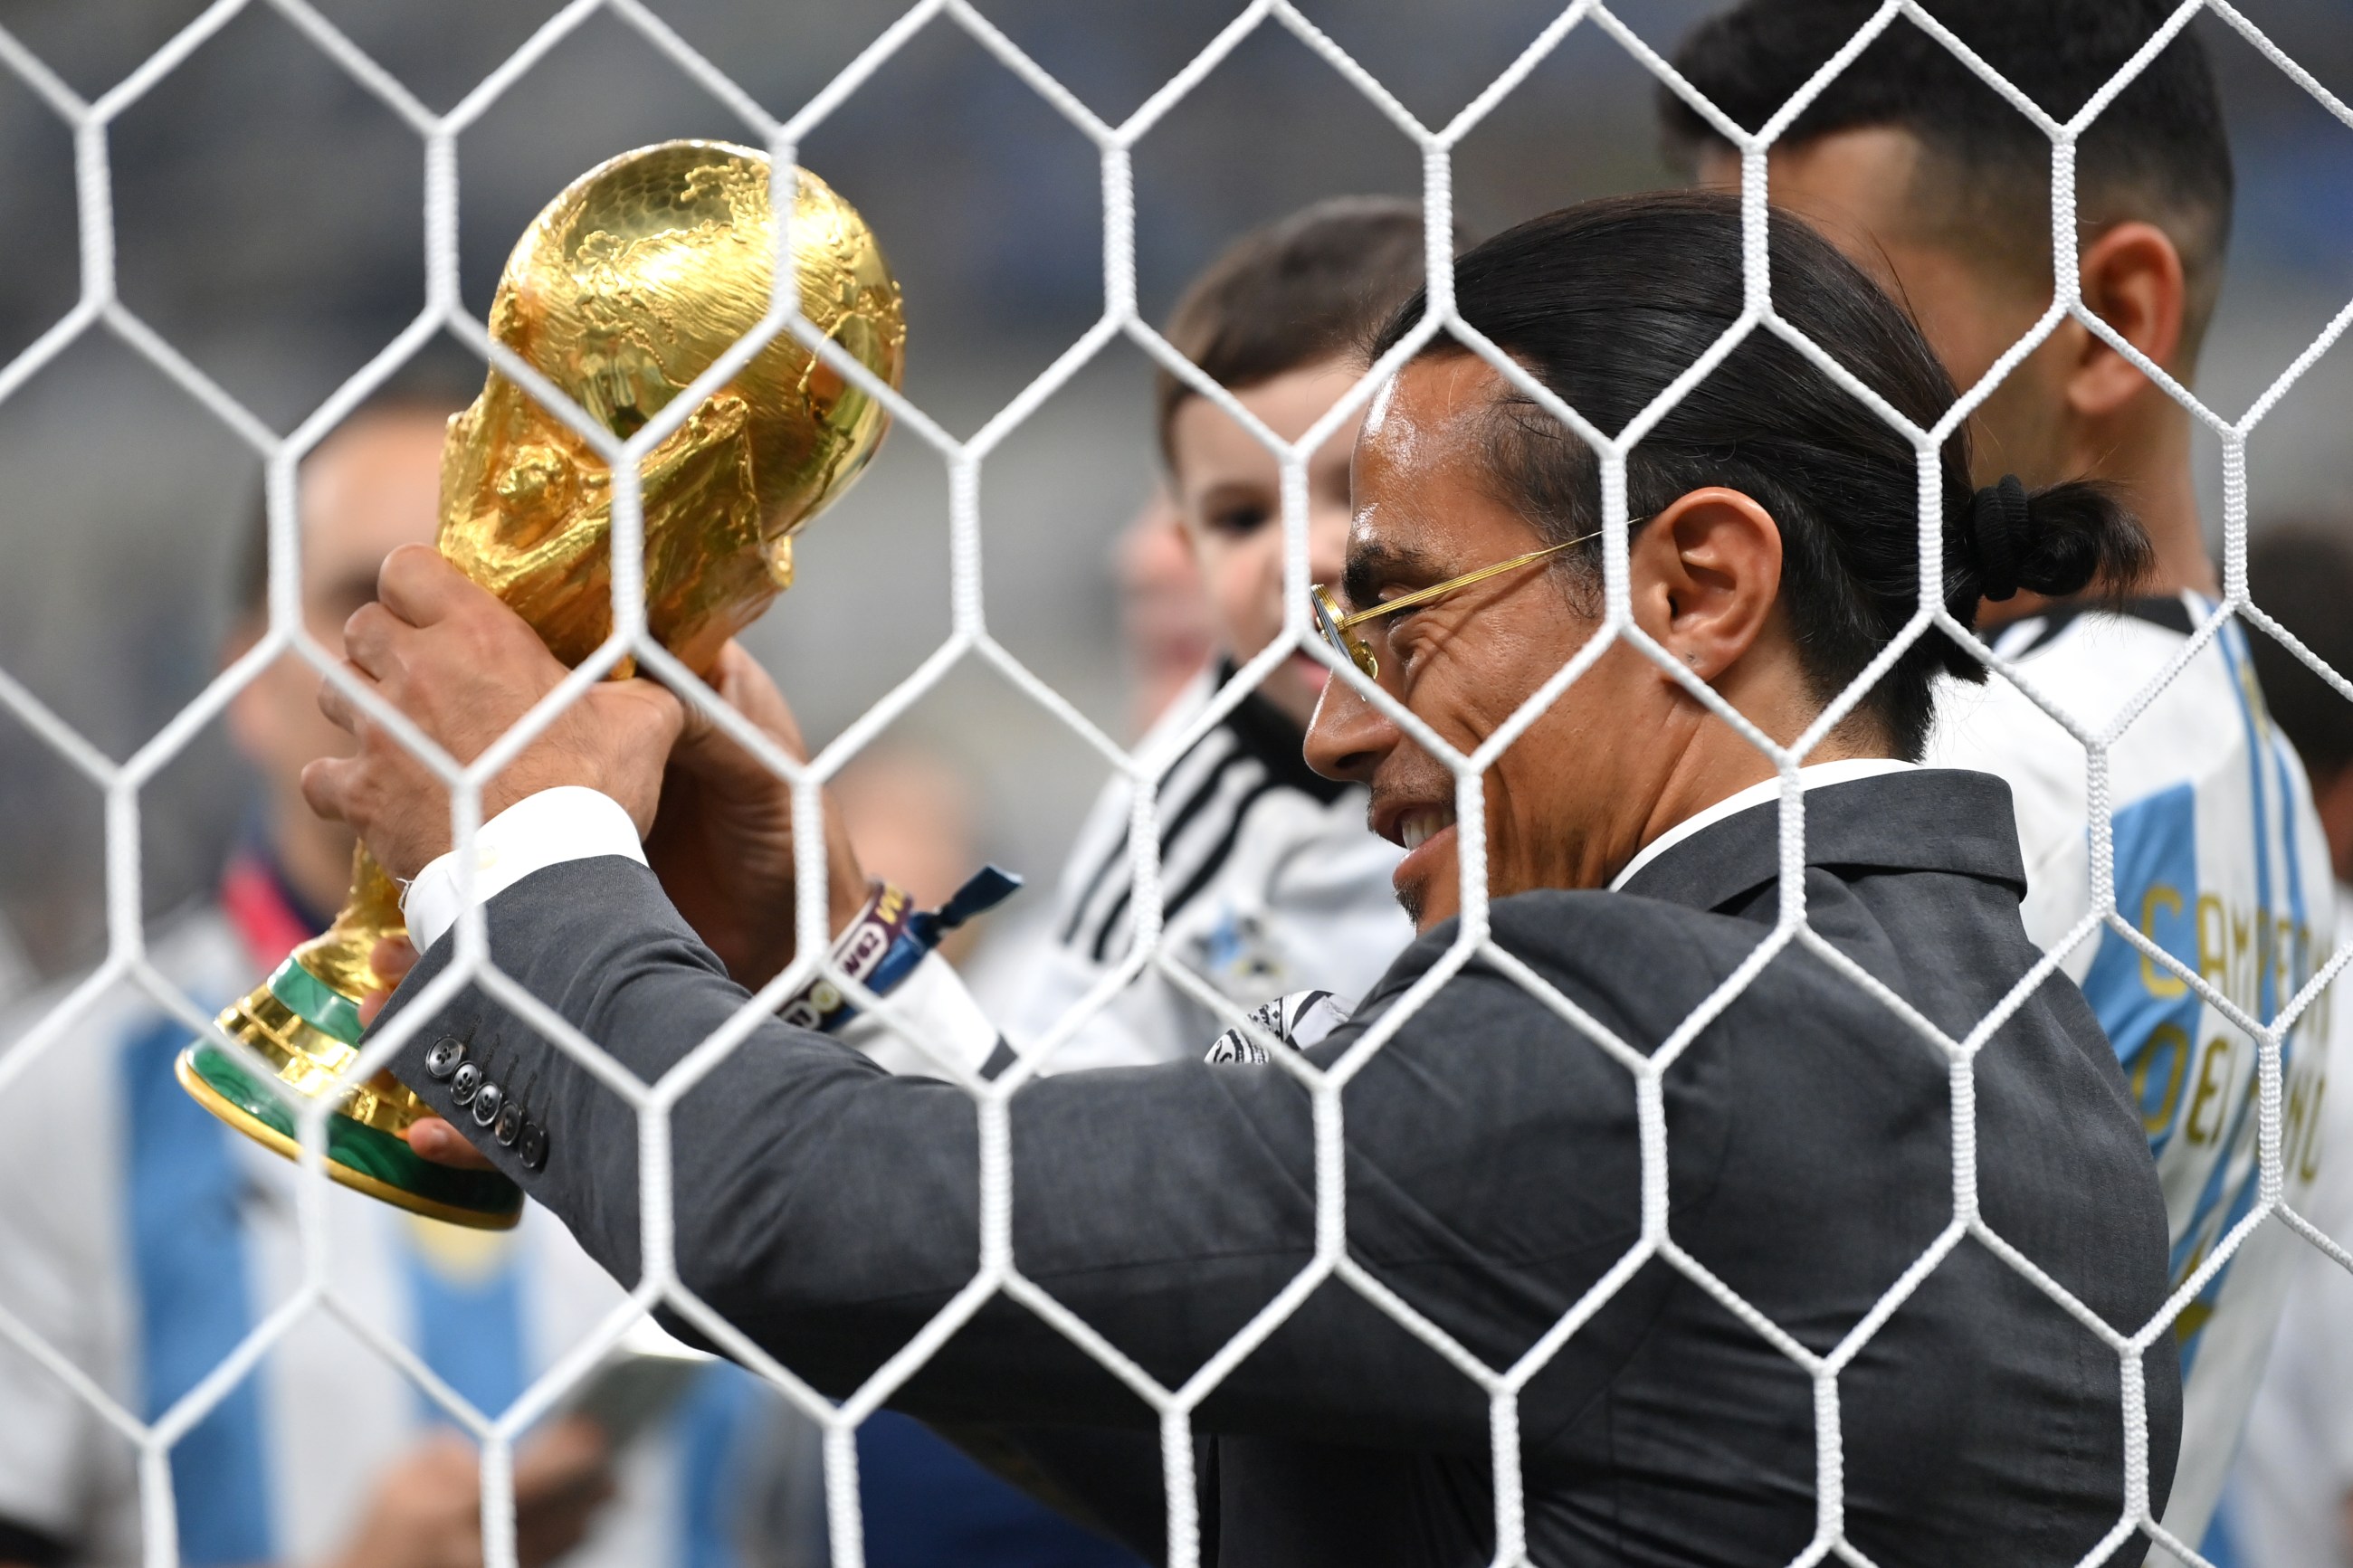 Mundial 2022 Qatar: La FIFA expedienta al chef Salt Bae por levantar la Copa  del Mundo tras el triunfo de Argentina